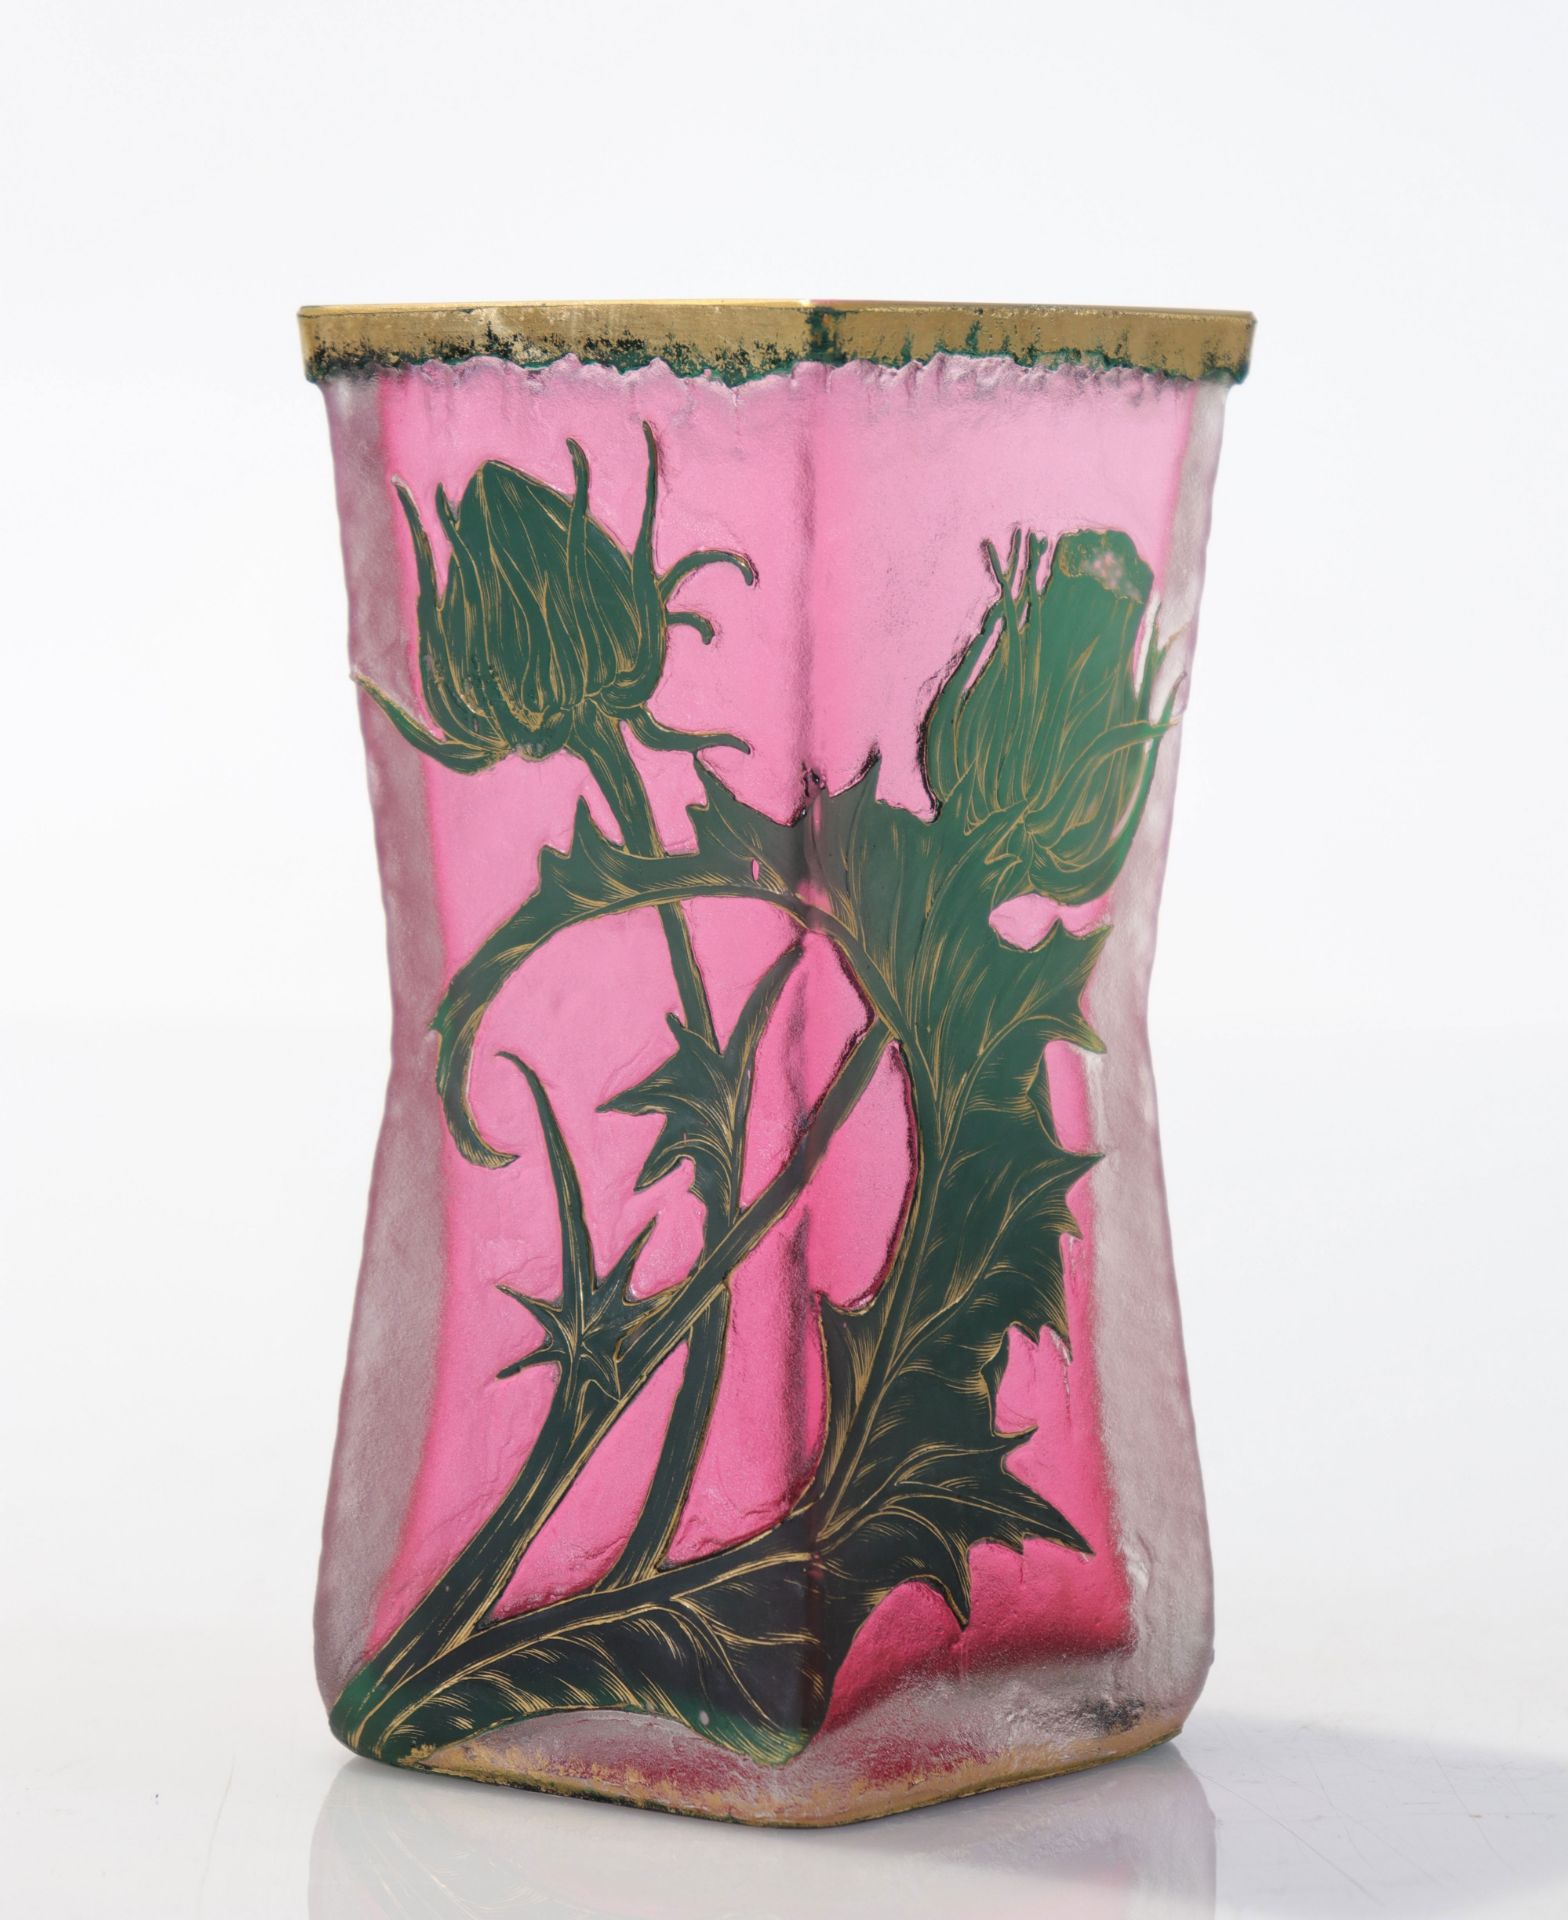 Daum Nancy vase decor with thistles